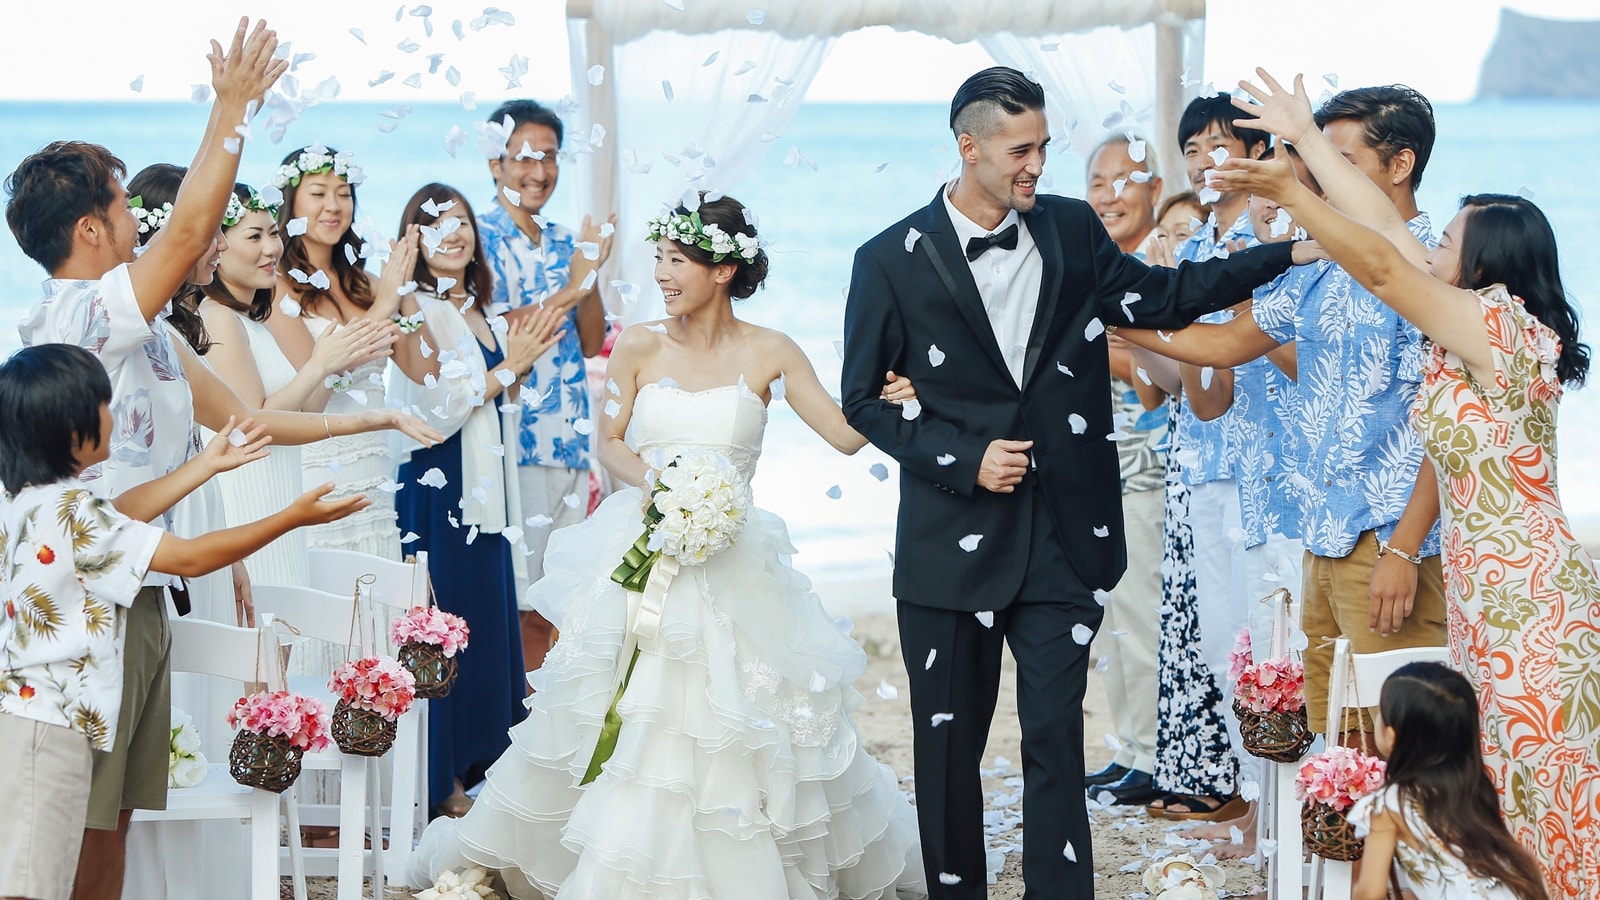 アラフォー女性も現役 ハワイ婚活 の実際 恋愛 結婚 東洋経済オンライン 社会をよくする経済ニュース